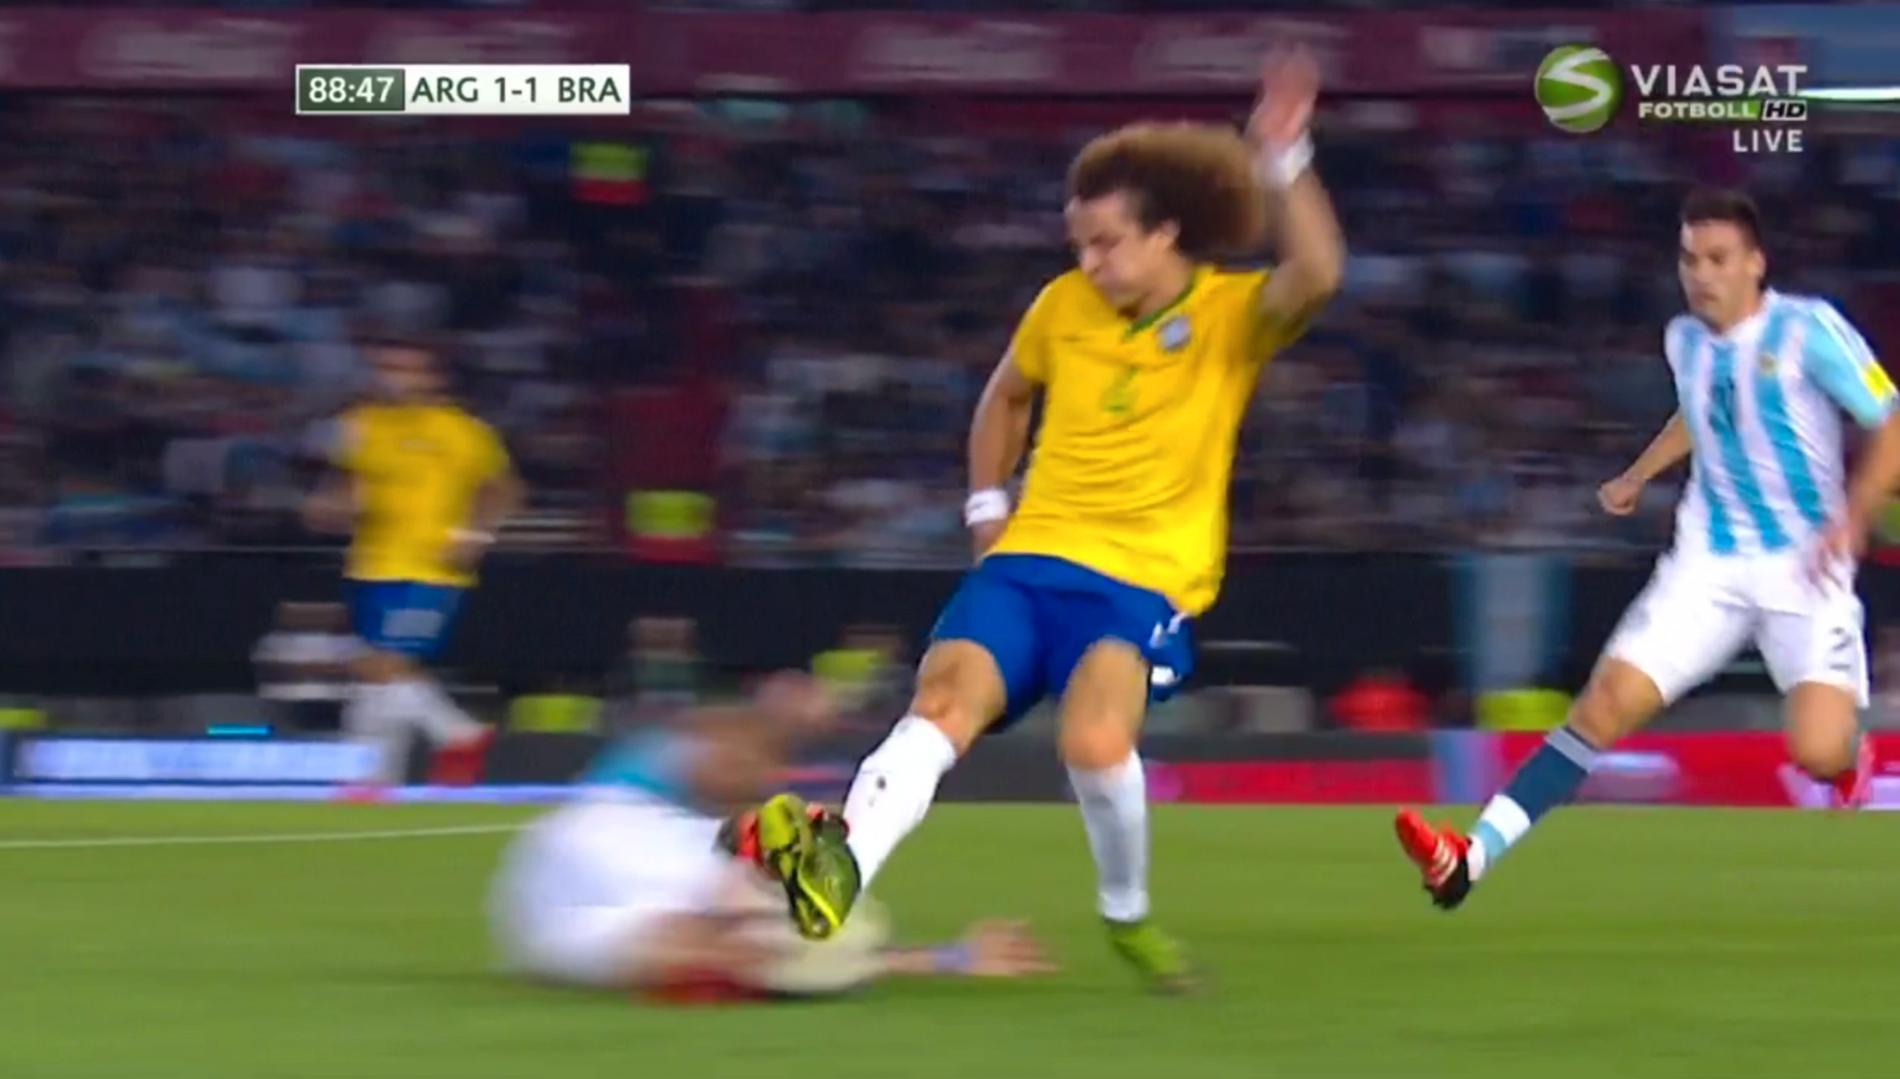 David Luiz fick sitt andra gula efter detta tilltag.